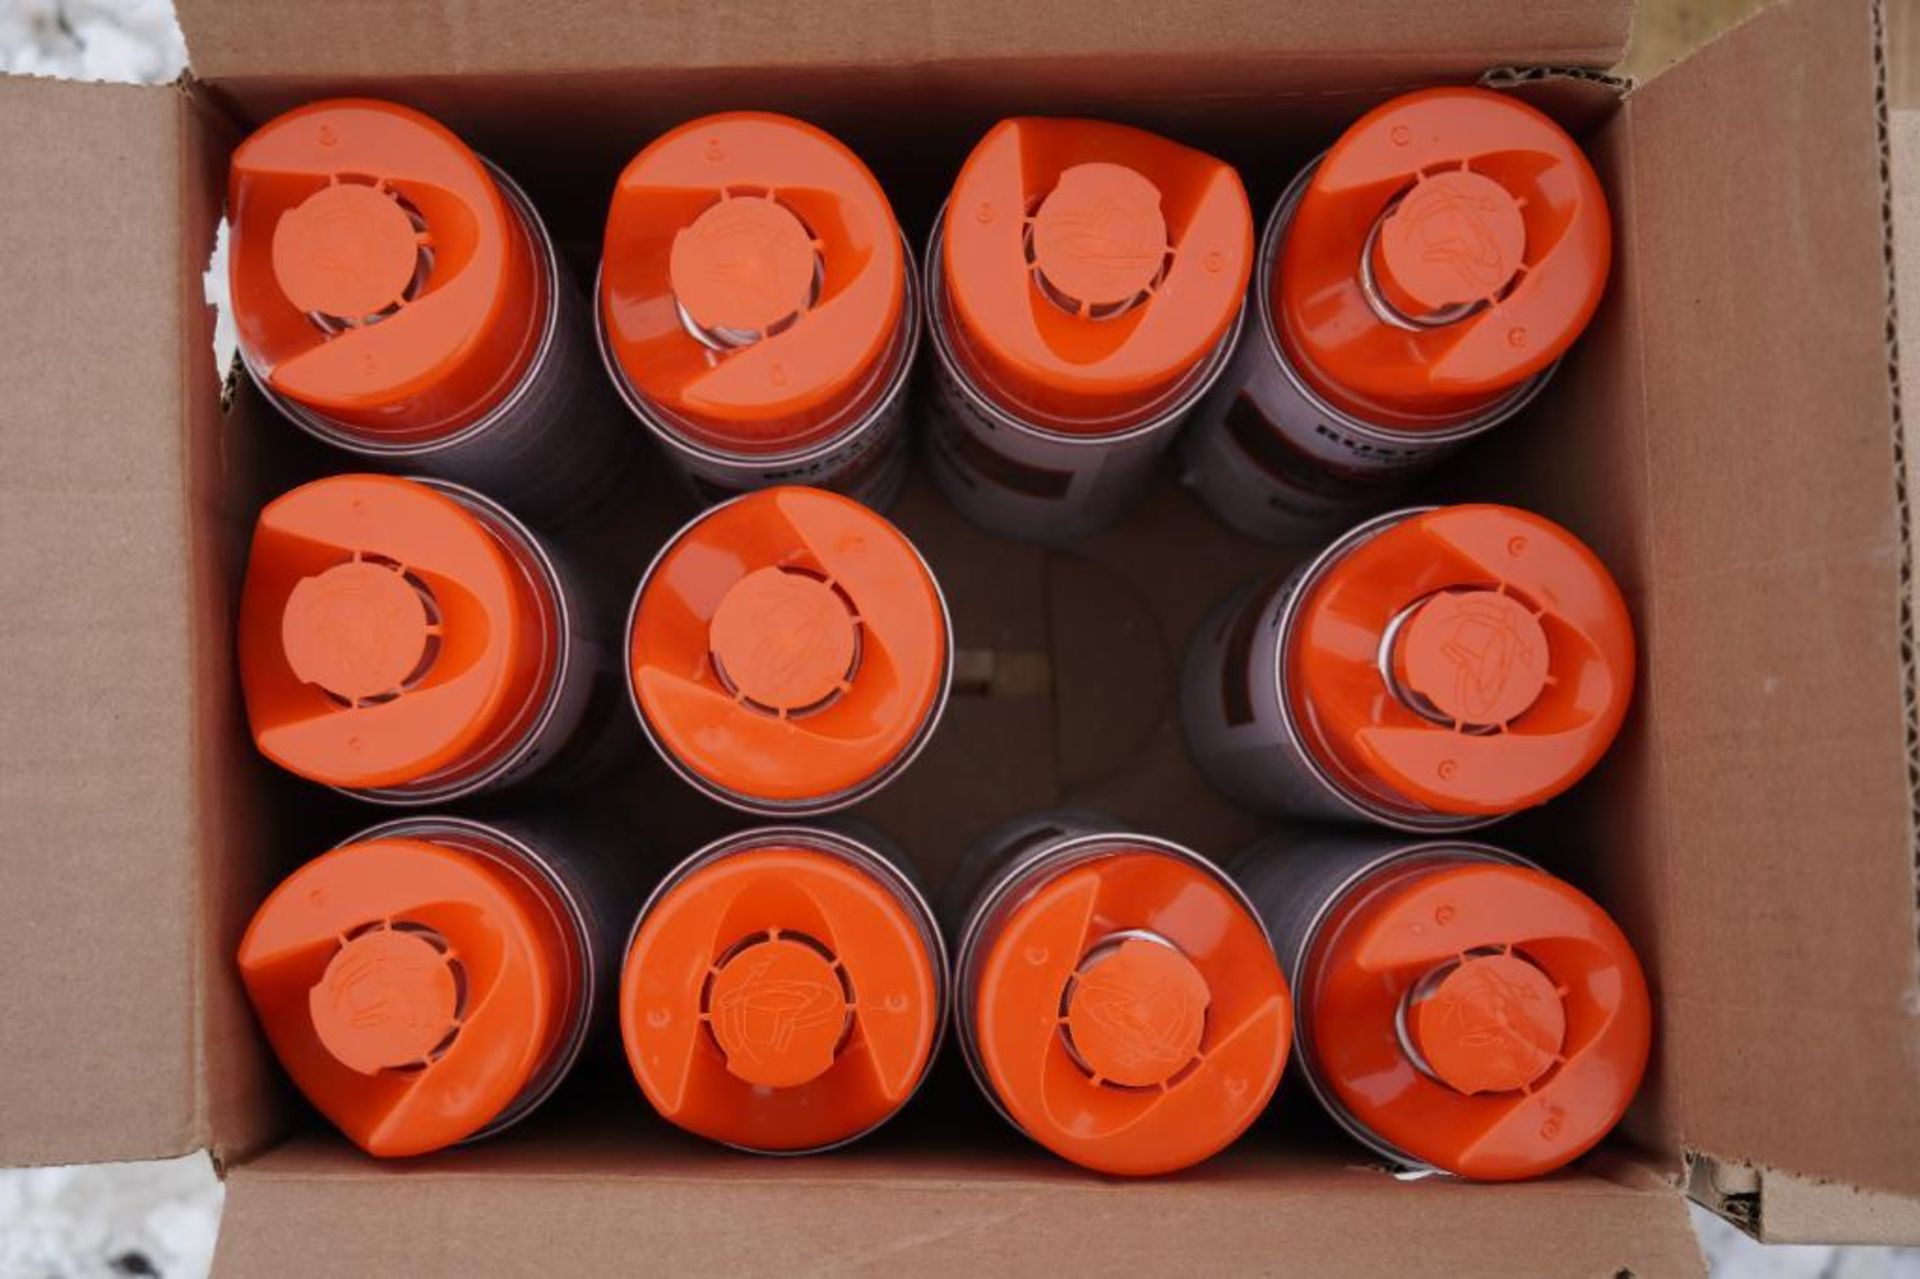 6 Cases Alert Orange Rustoleum Marking Paint - Image 3 of 5